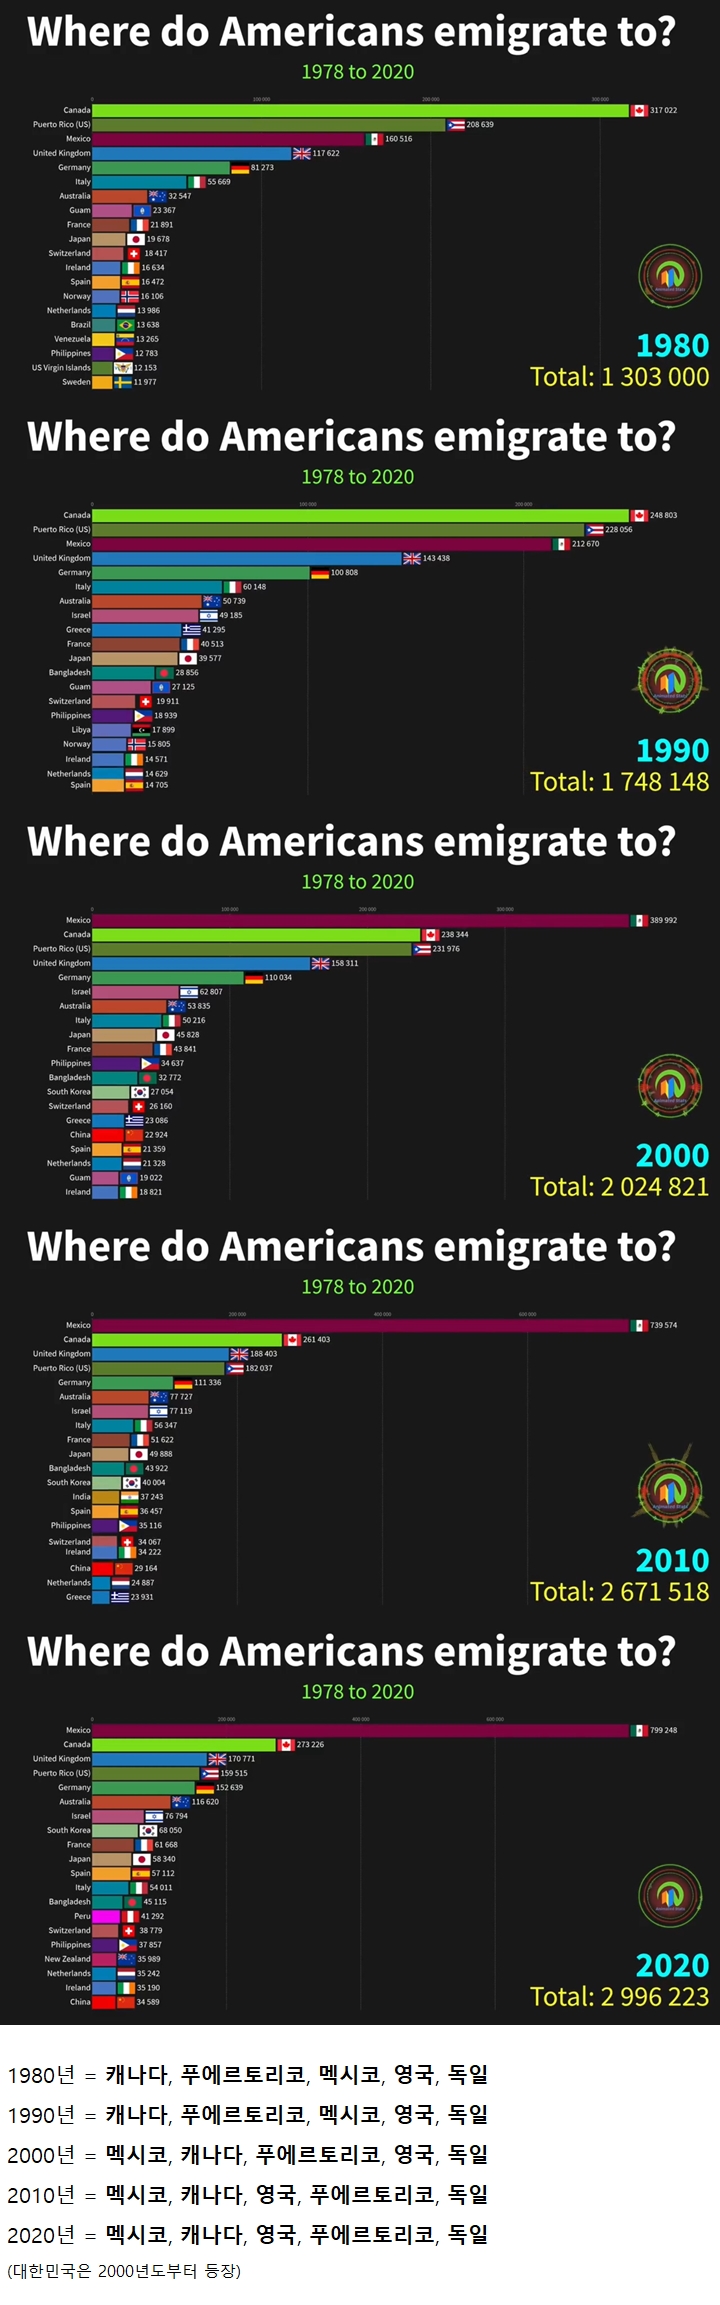 미국인들은 어느 나라로 이민을 갈까?